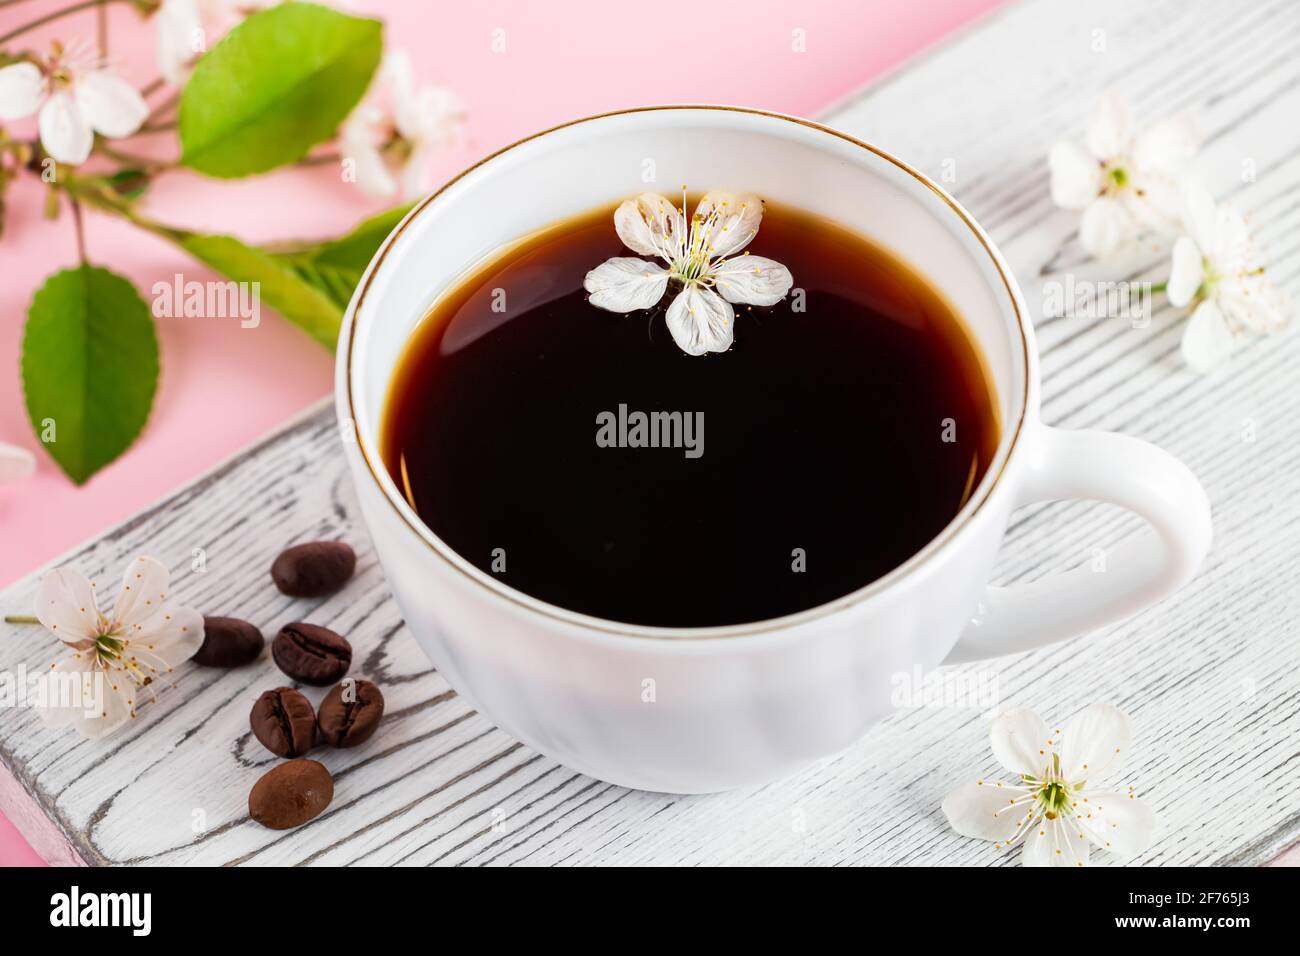 Starker Espresso-Kaffee auf weißem Holztablett. Frühlingsblumen eines Apfelbaums auf einem rosa Hintergrund. Guten Morgen und Frühling Konzept. Stockfoto